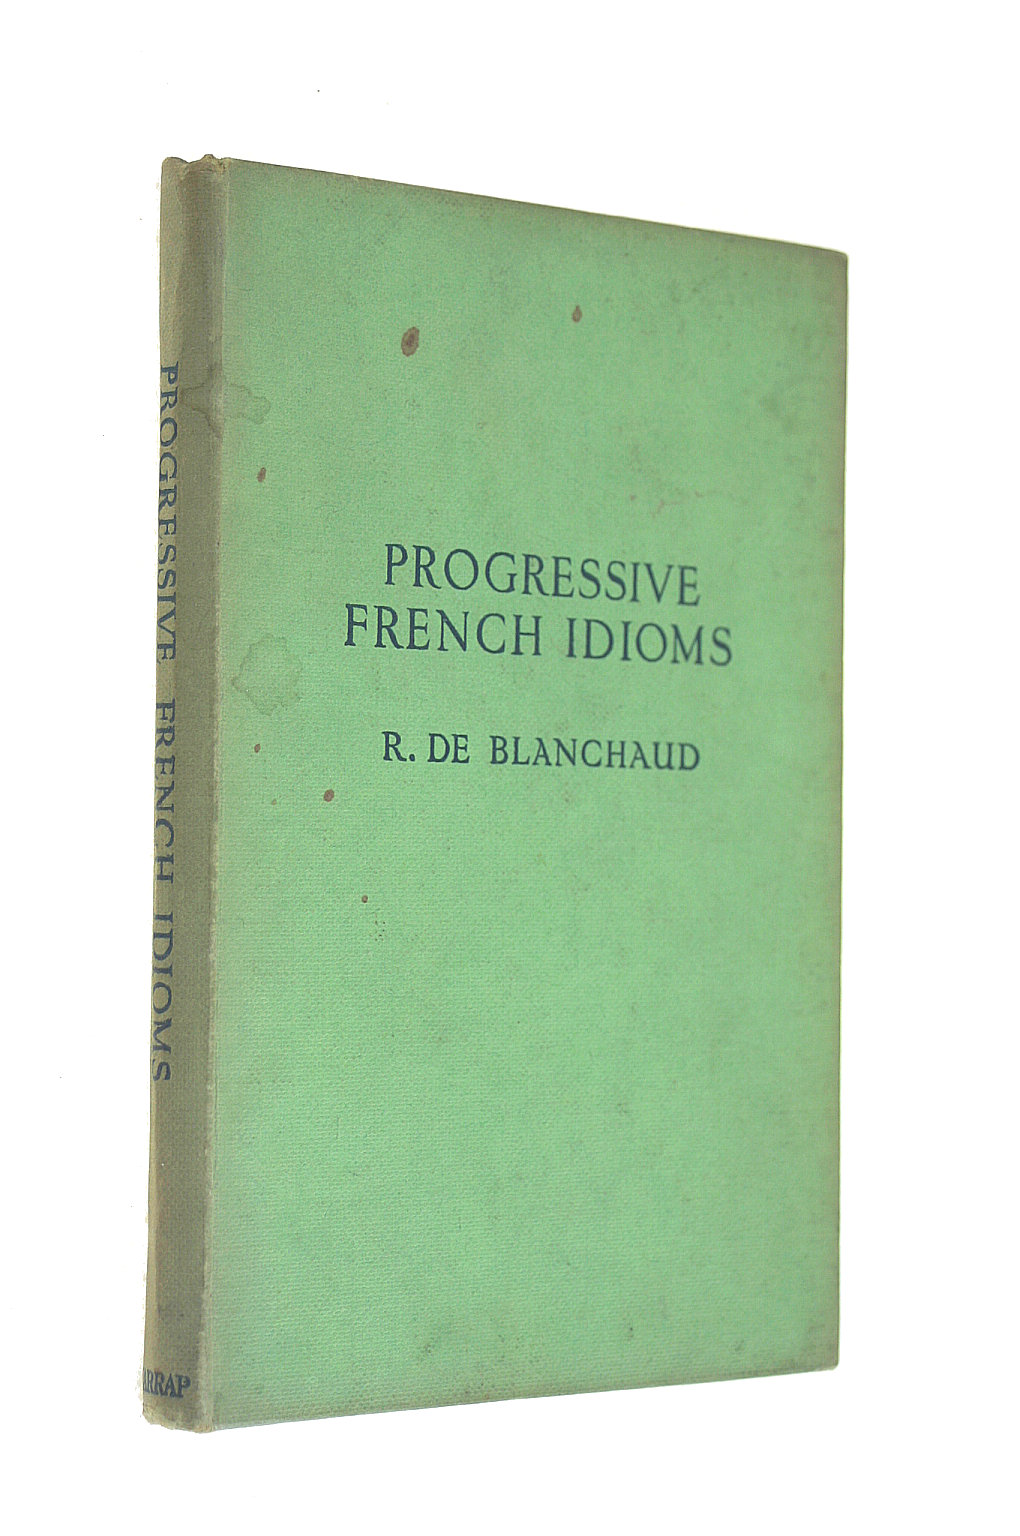 R DE BLANCHAUD [COMPILER] - Progressive French Idioms